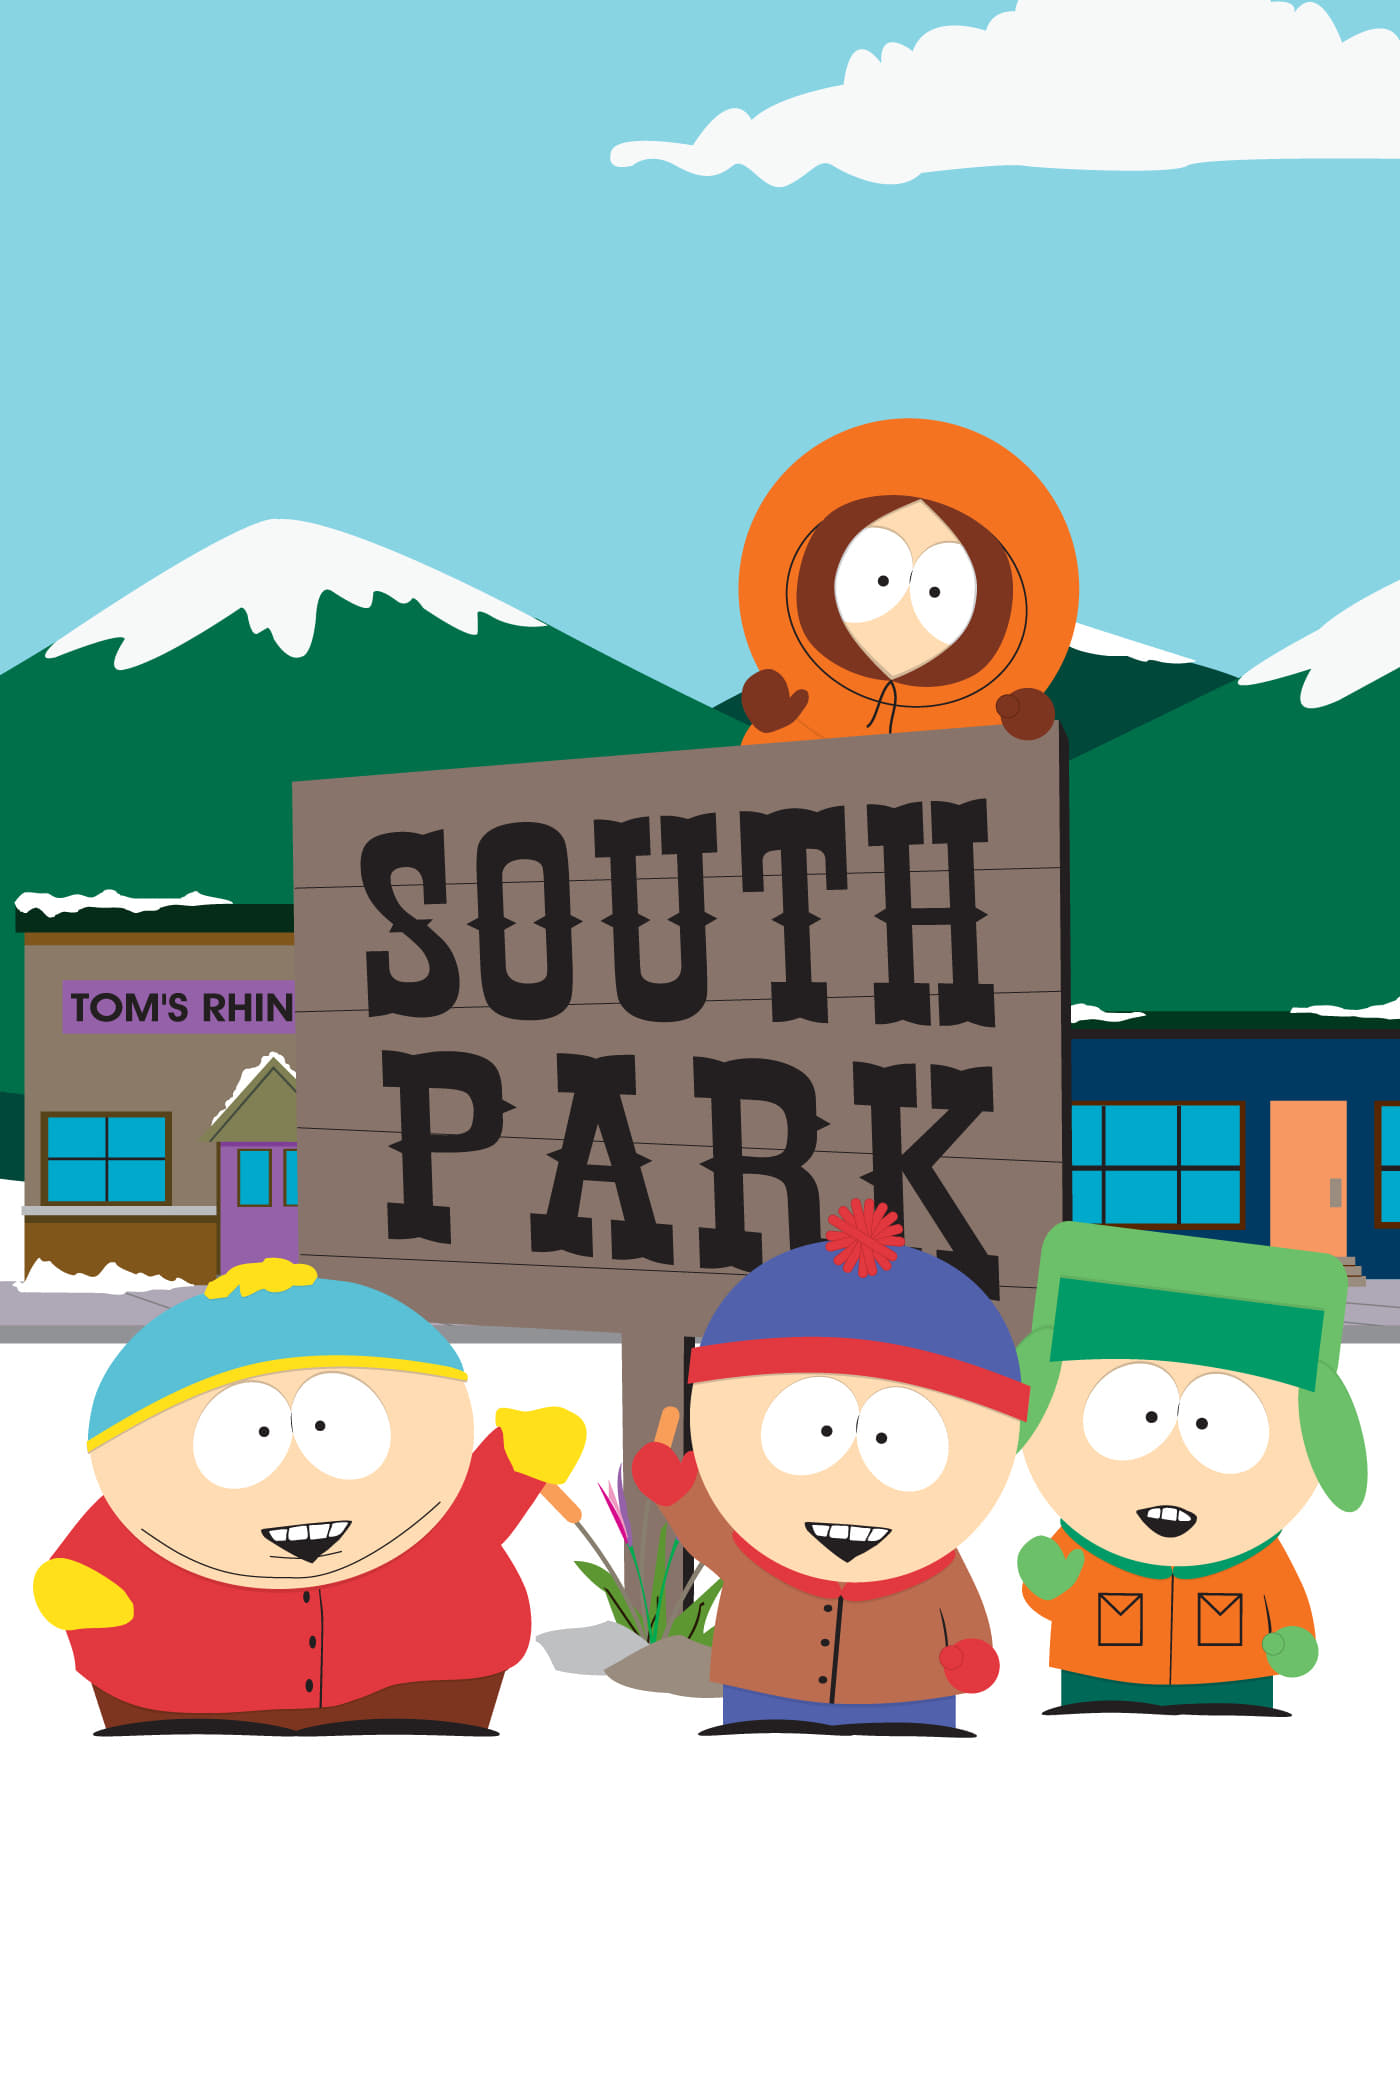 South Park - Saison 23